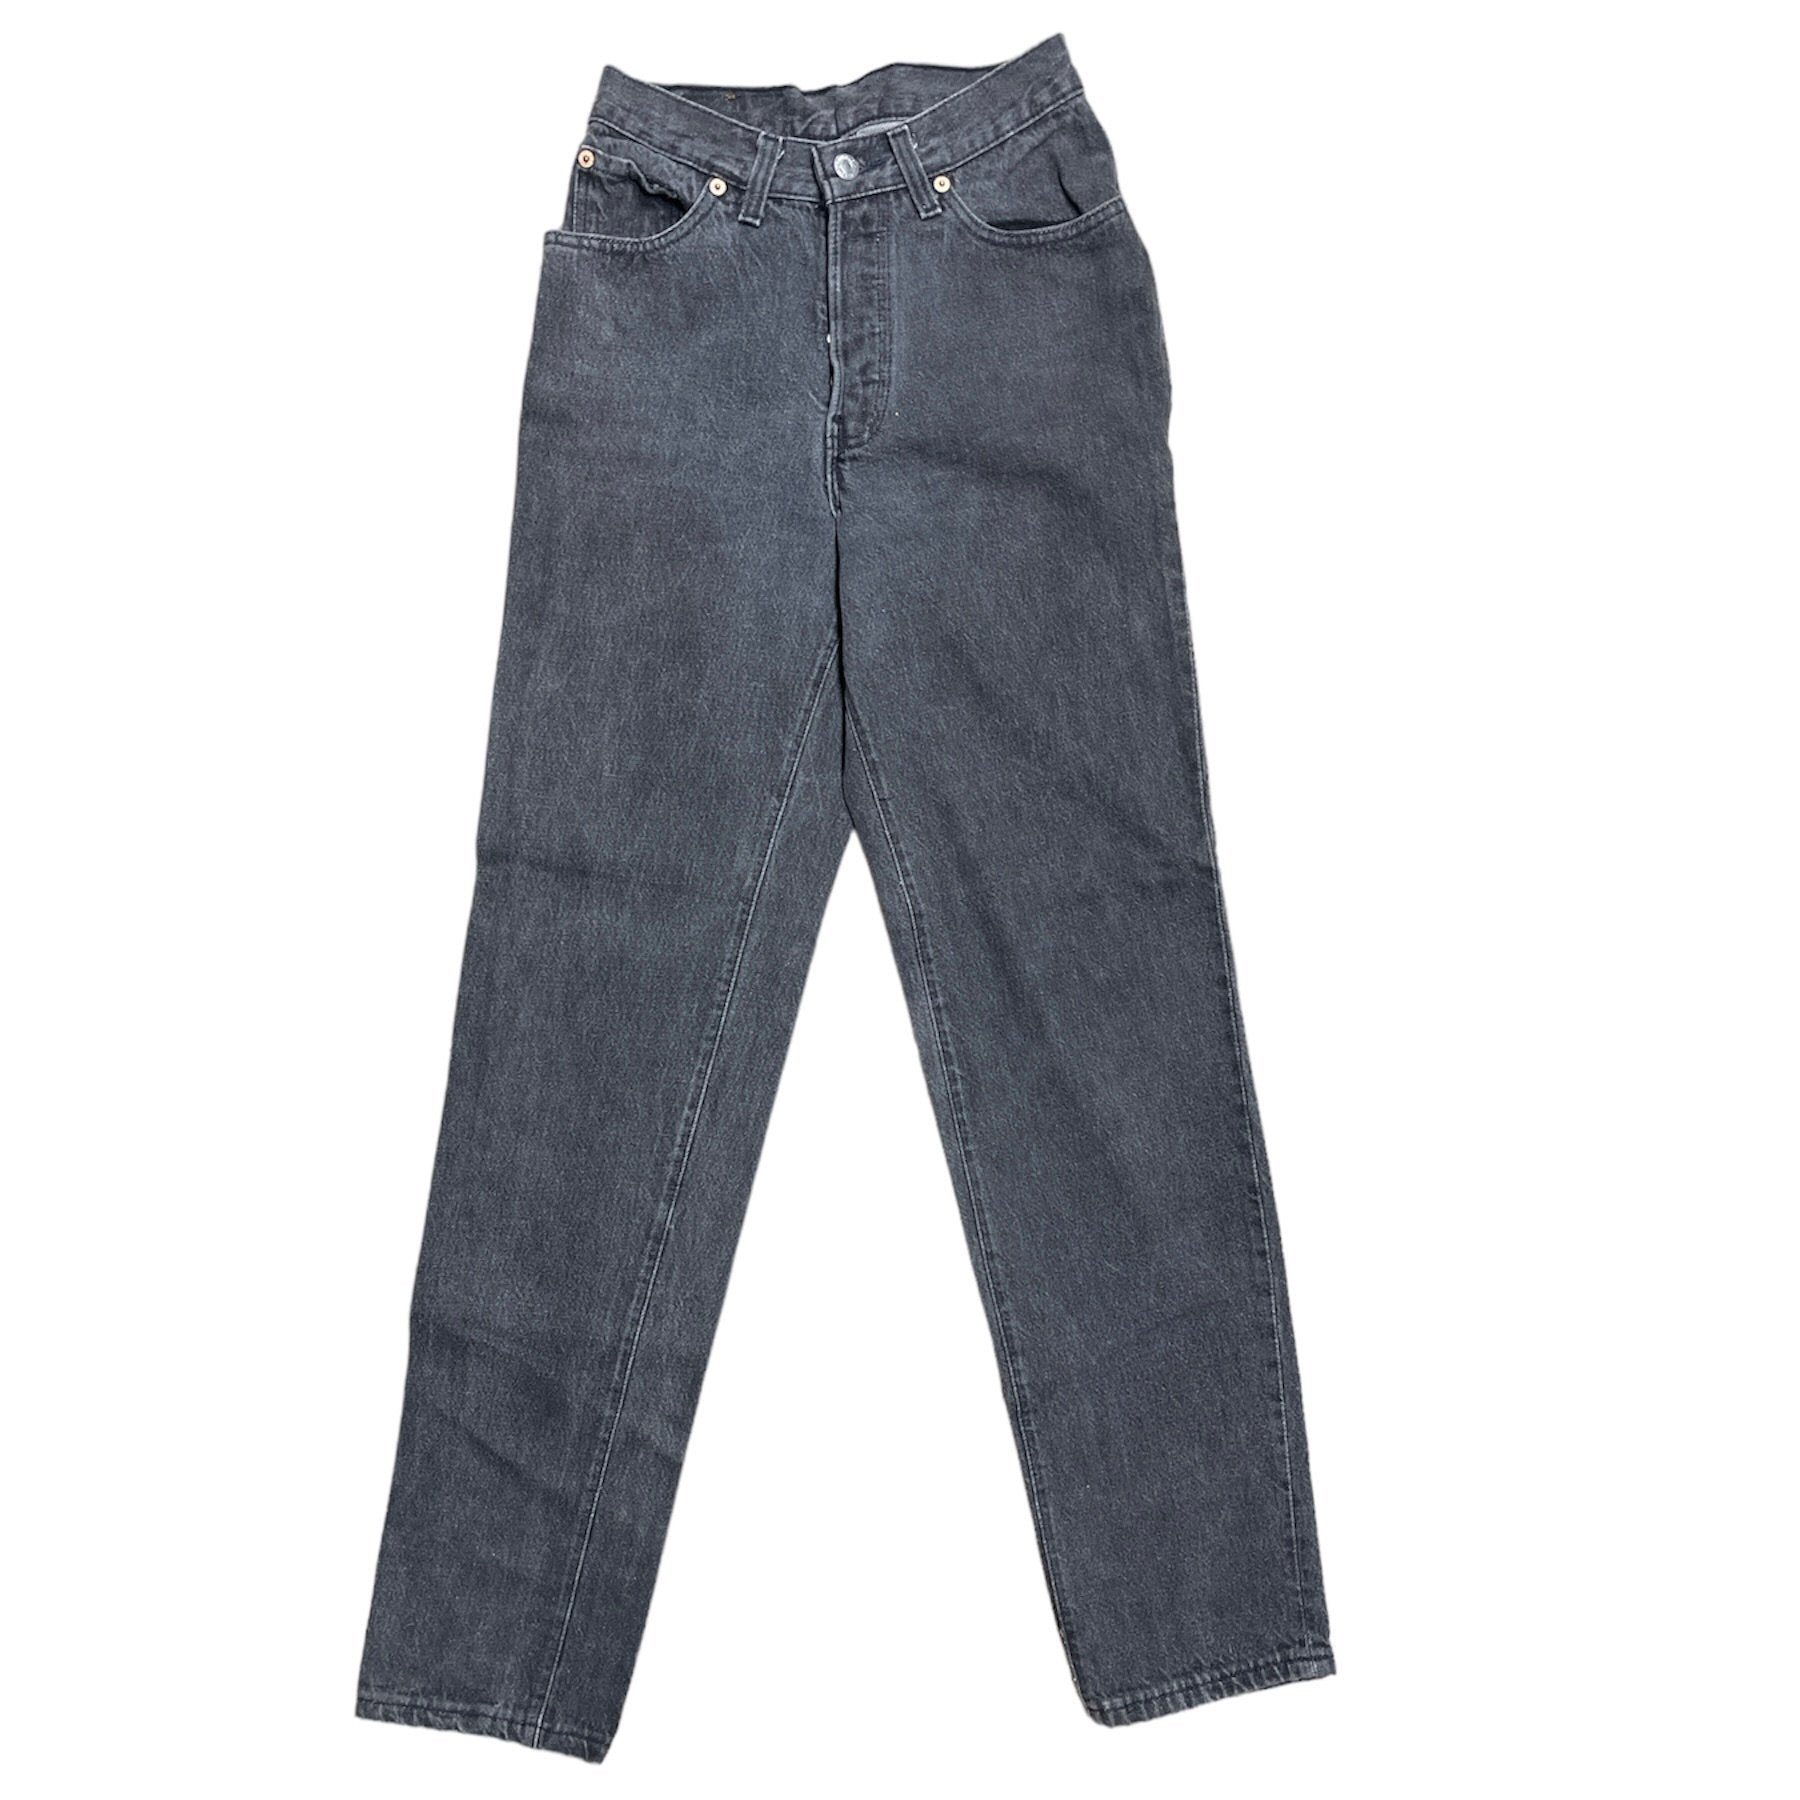 Vintage Levis Grey/Black Jeans (W27/L32)